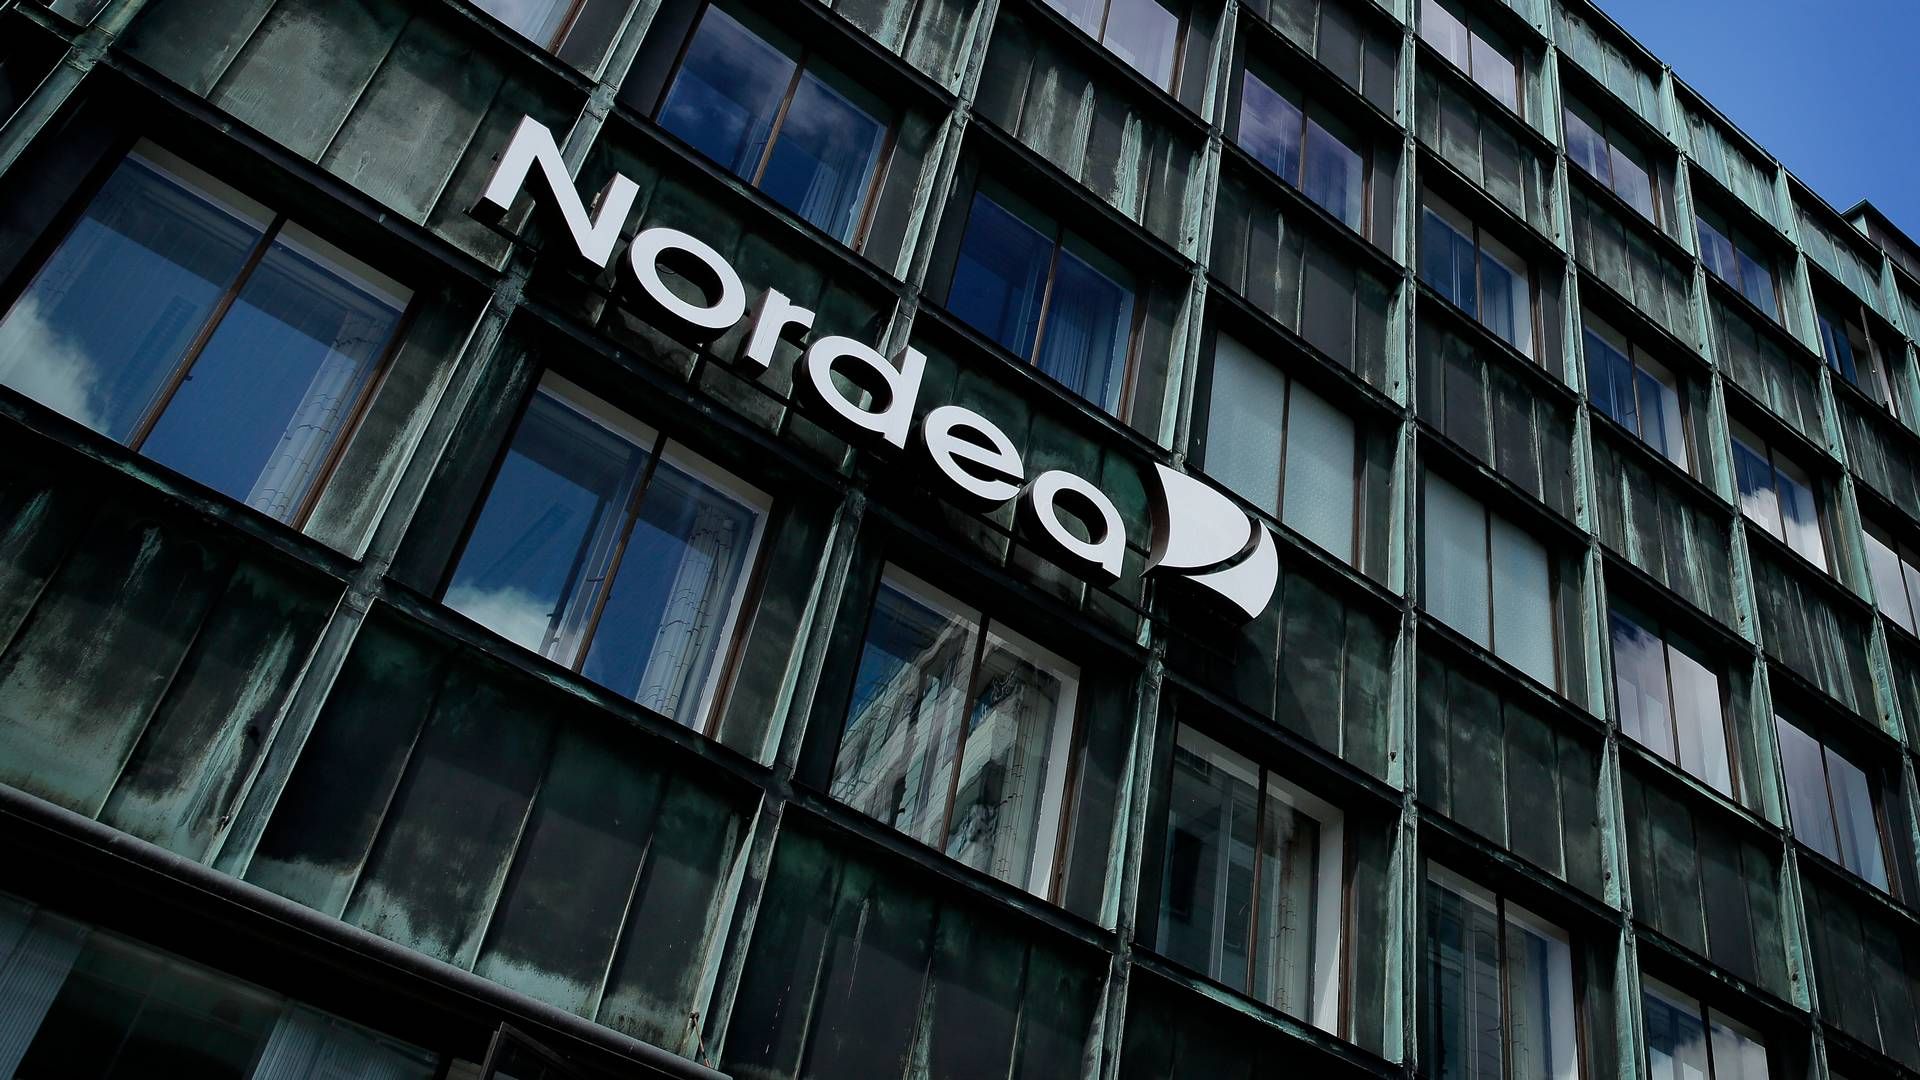 ANBEFALER: Nordea anbefaler kjøp av aksjer fra Storebrand. | Foto: Jens Dresling